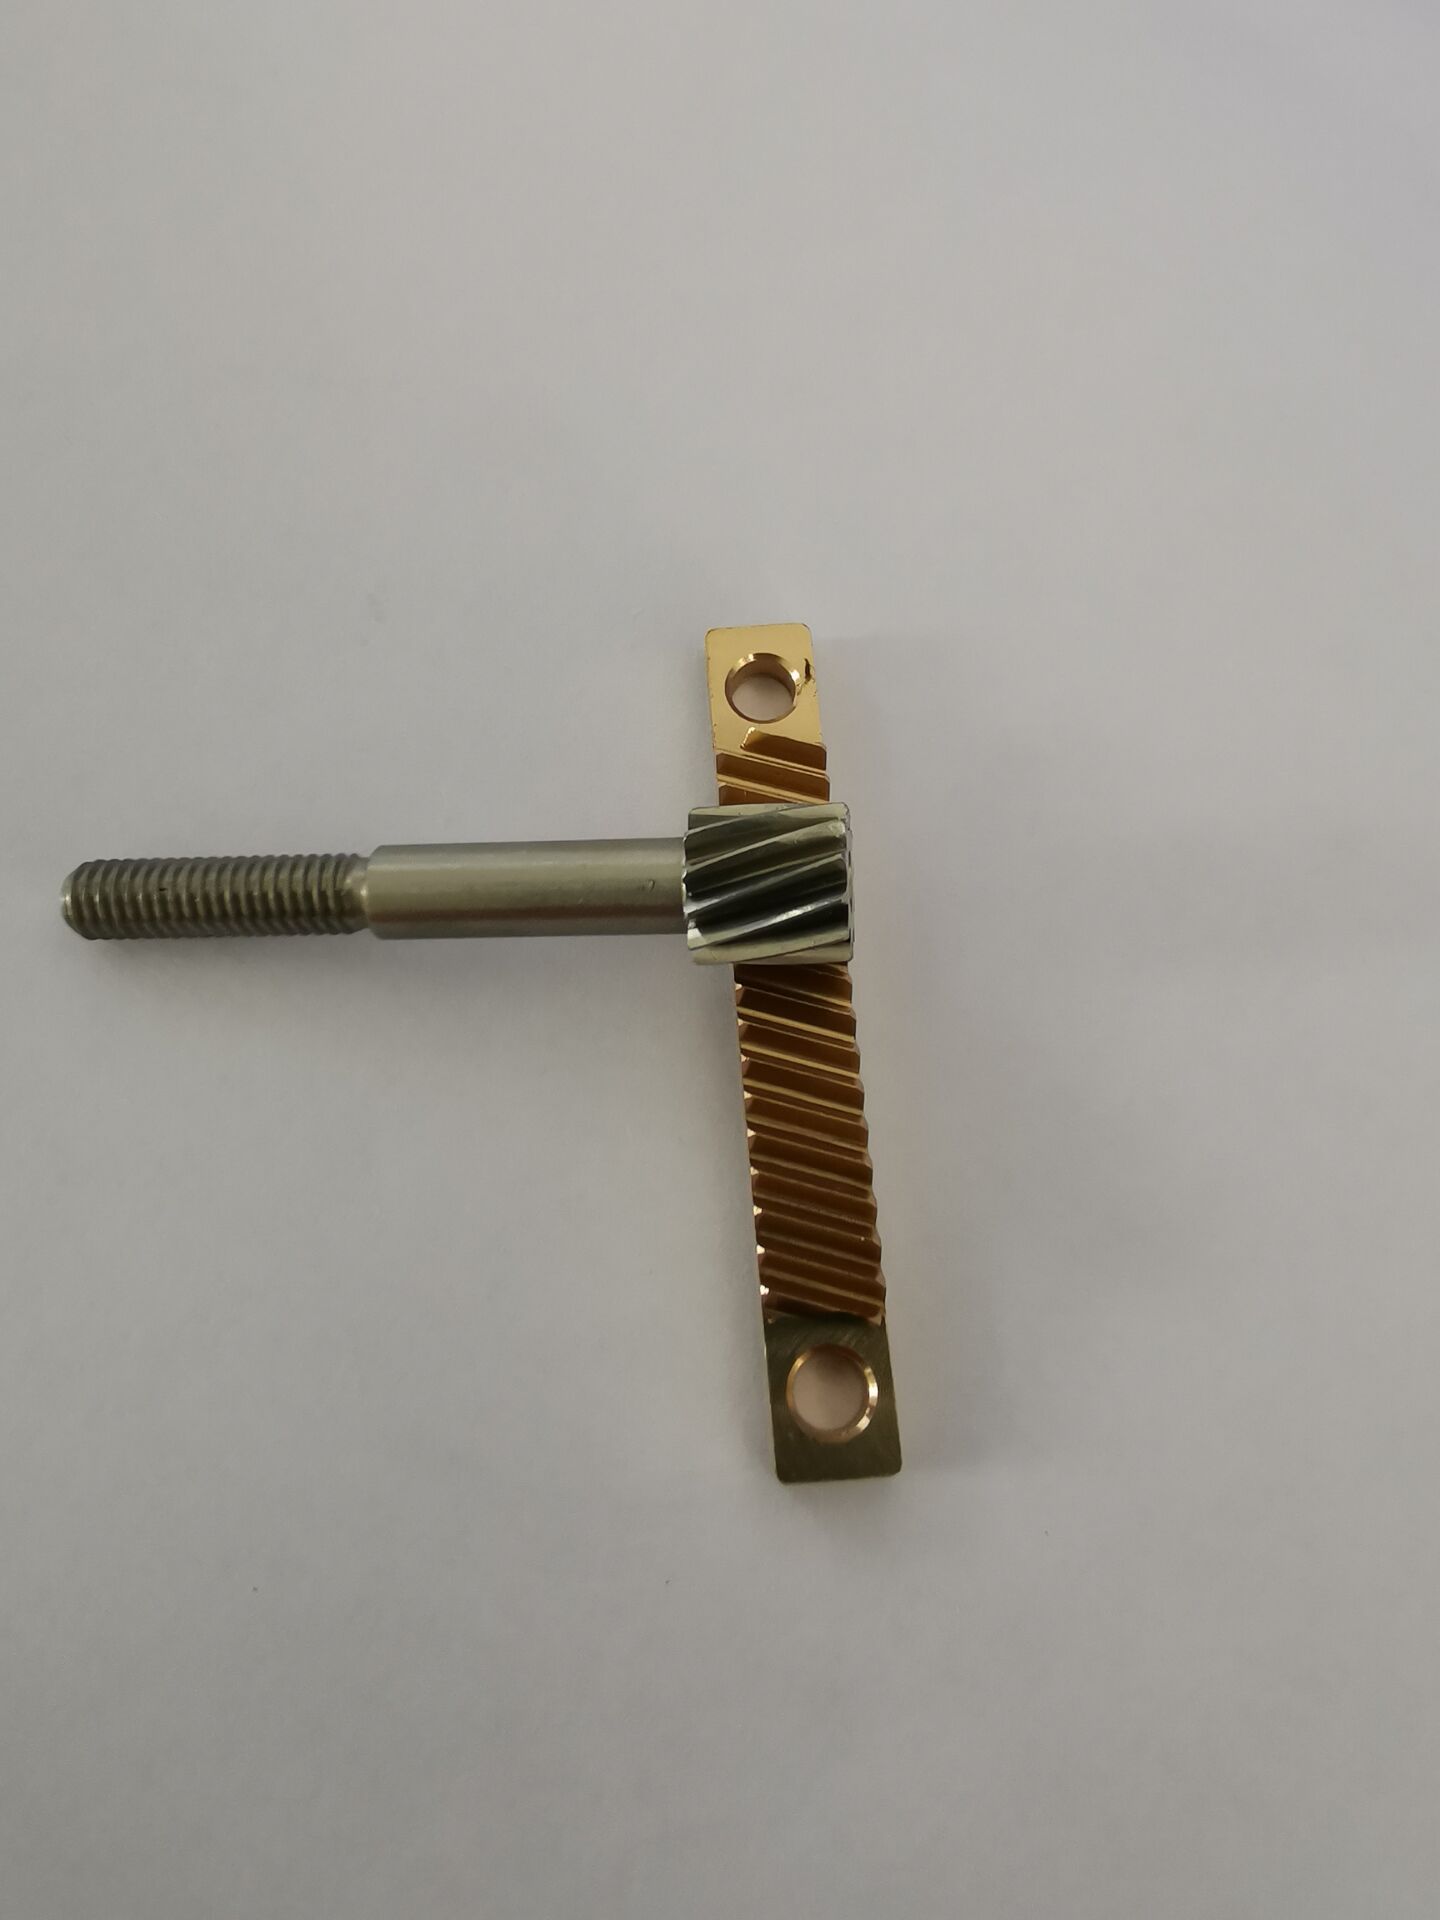 深圳显微镜小模数黄铜滑台齿条定做 按需定制